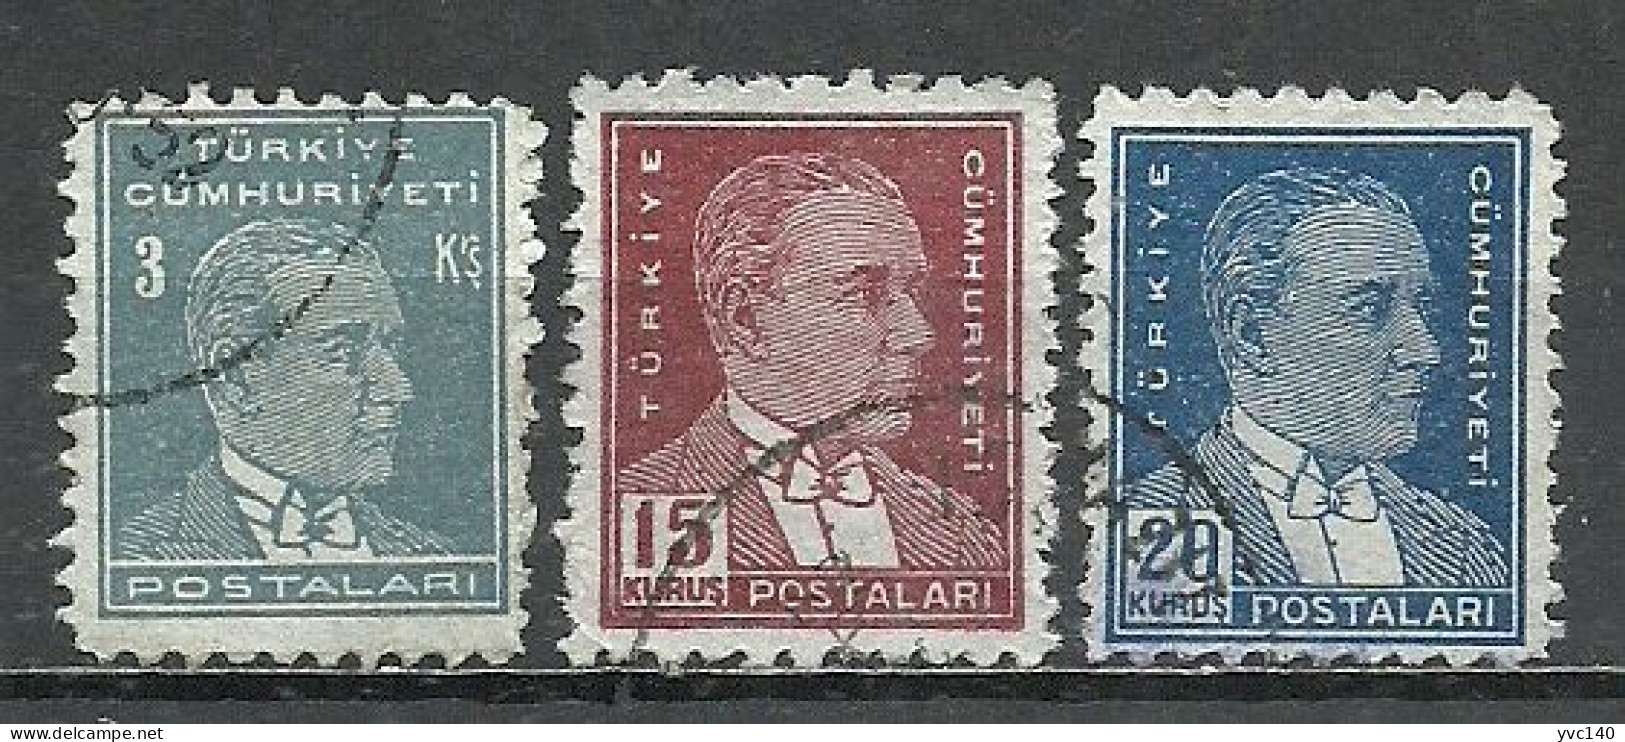 Turkey; 1951 6th Ataturk Issue Stamps - Gebraucht